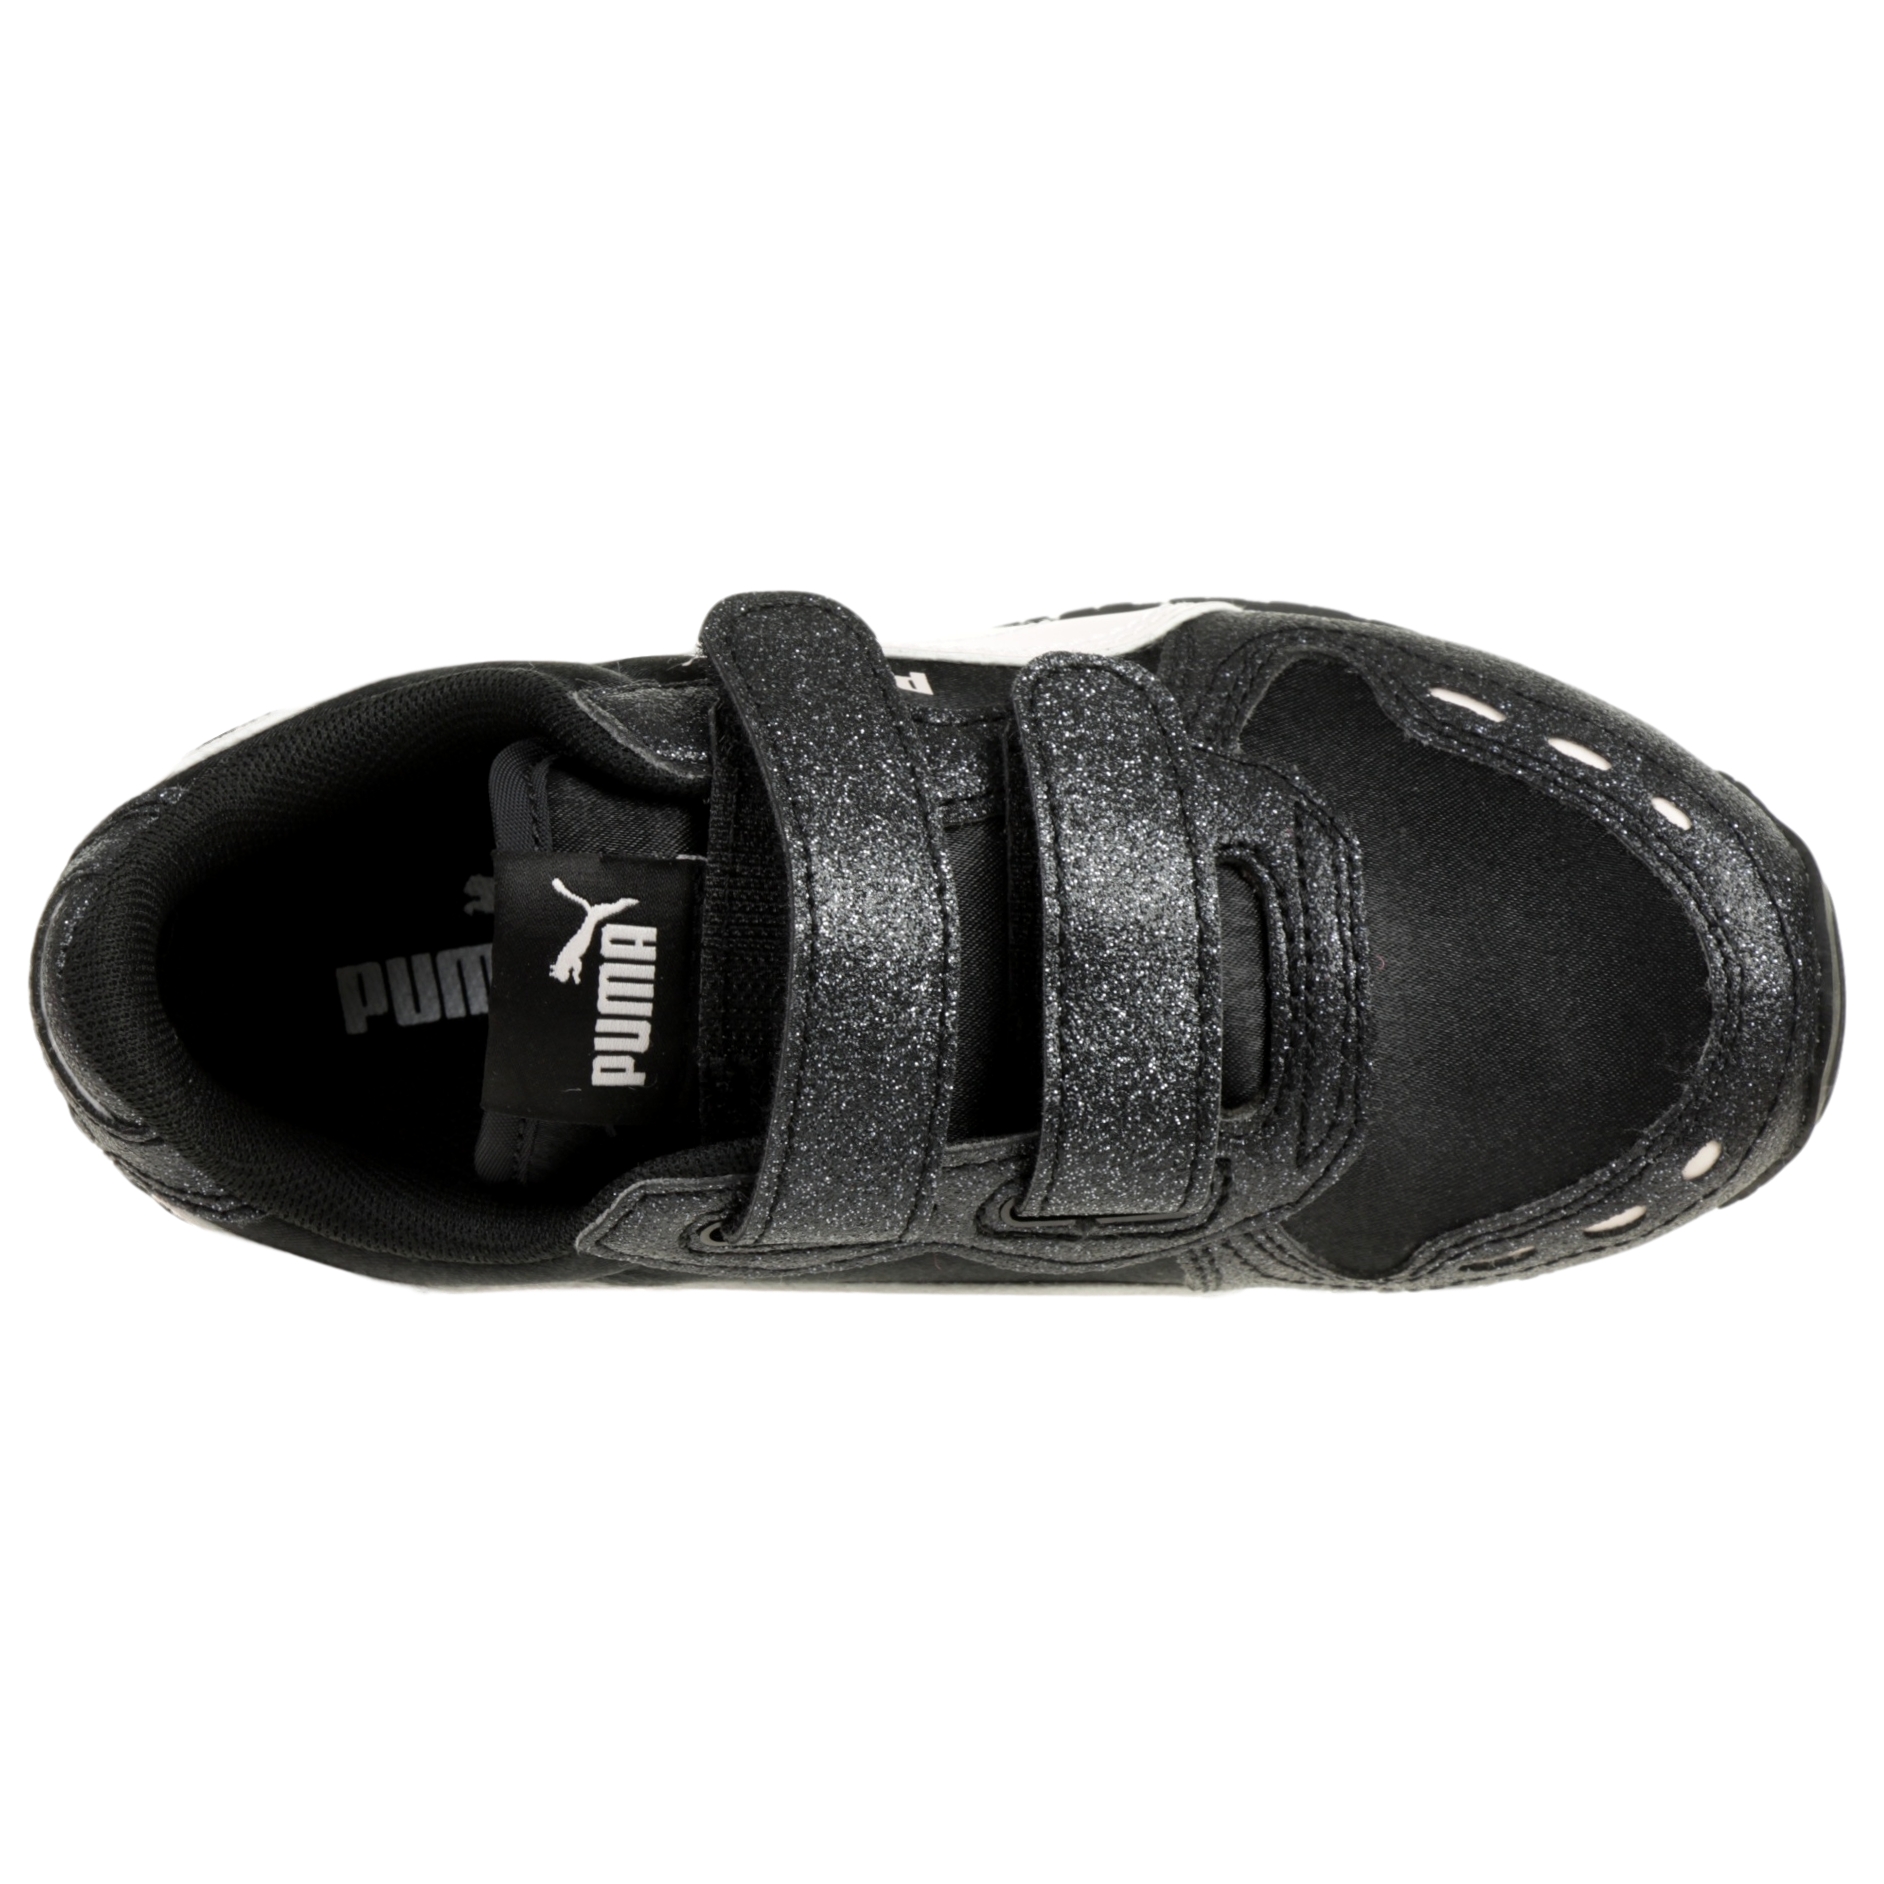 PUMA Cabana Racer Glitz V PS Kids Sneaker Schuhe Mädchen black 370985 03